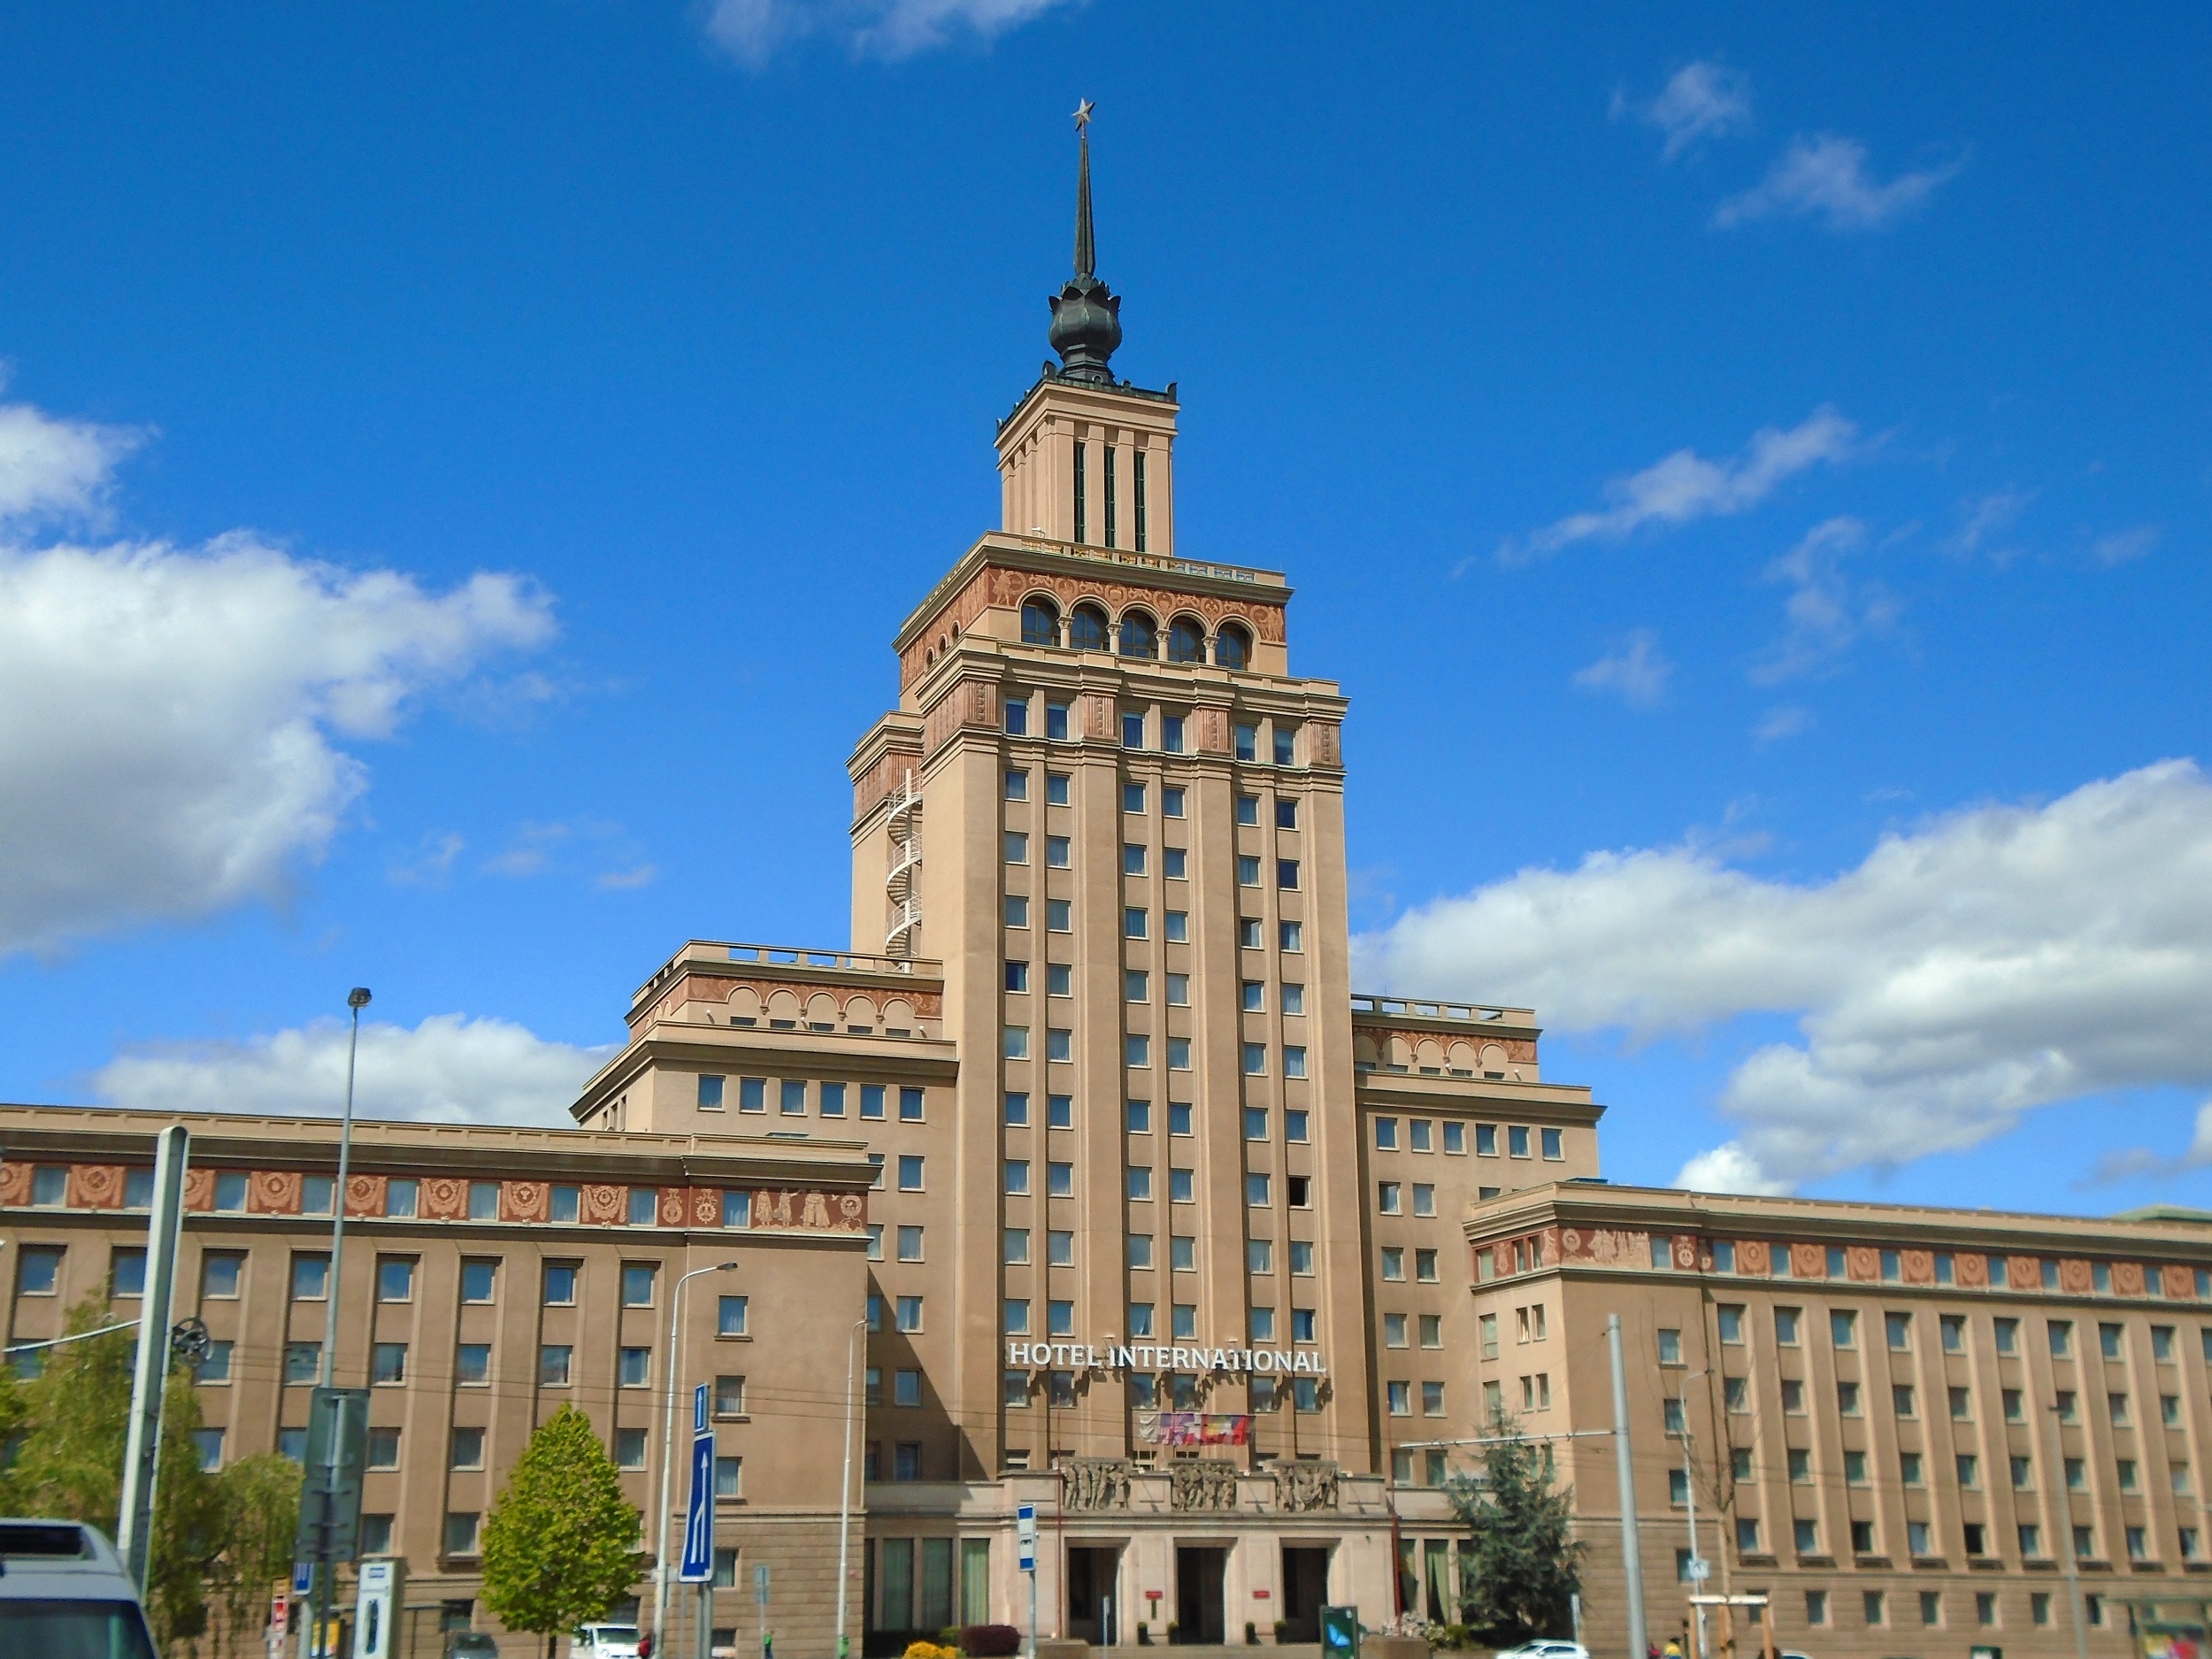 Hotel International v pražských Dejvicích: Kontroverzní stavba má nesporné kvality